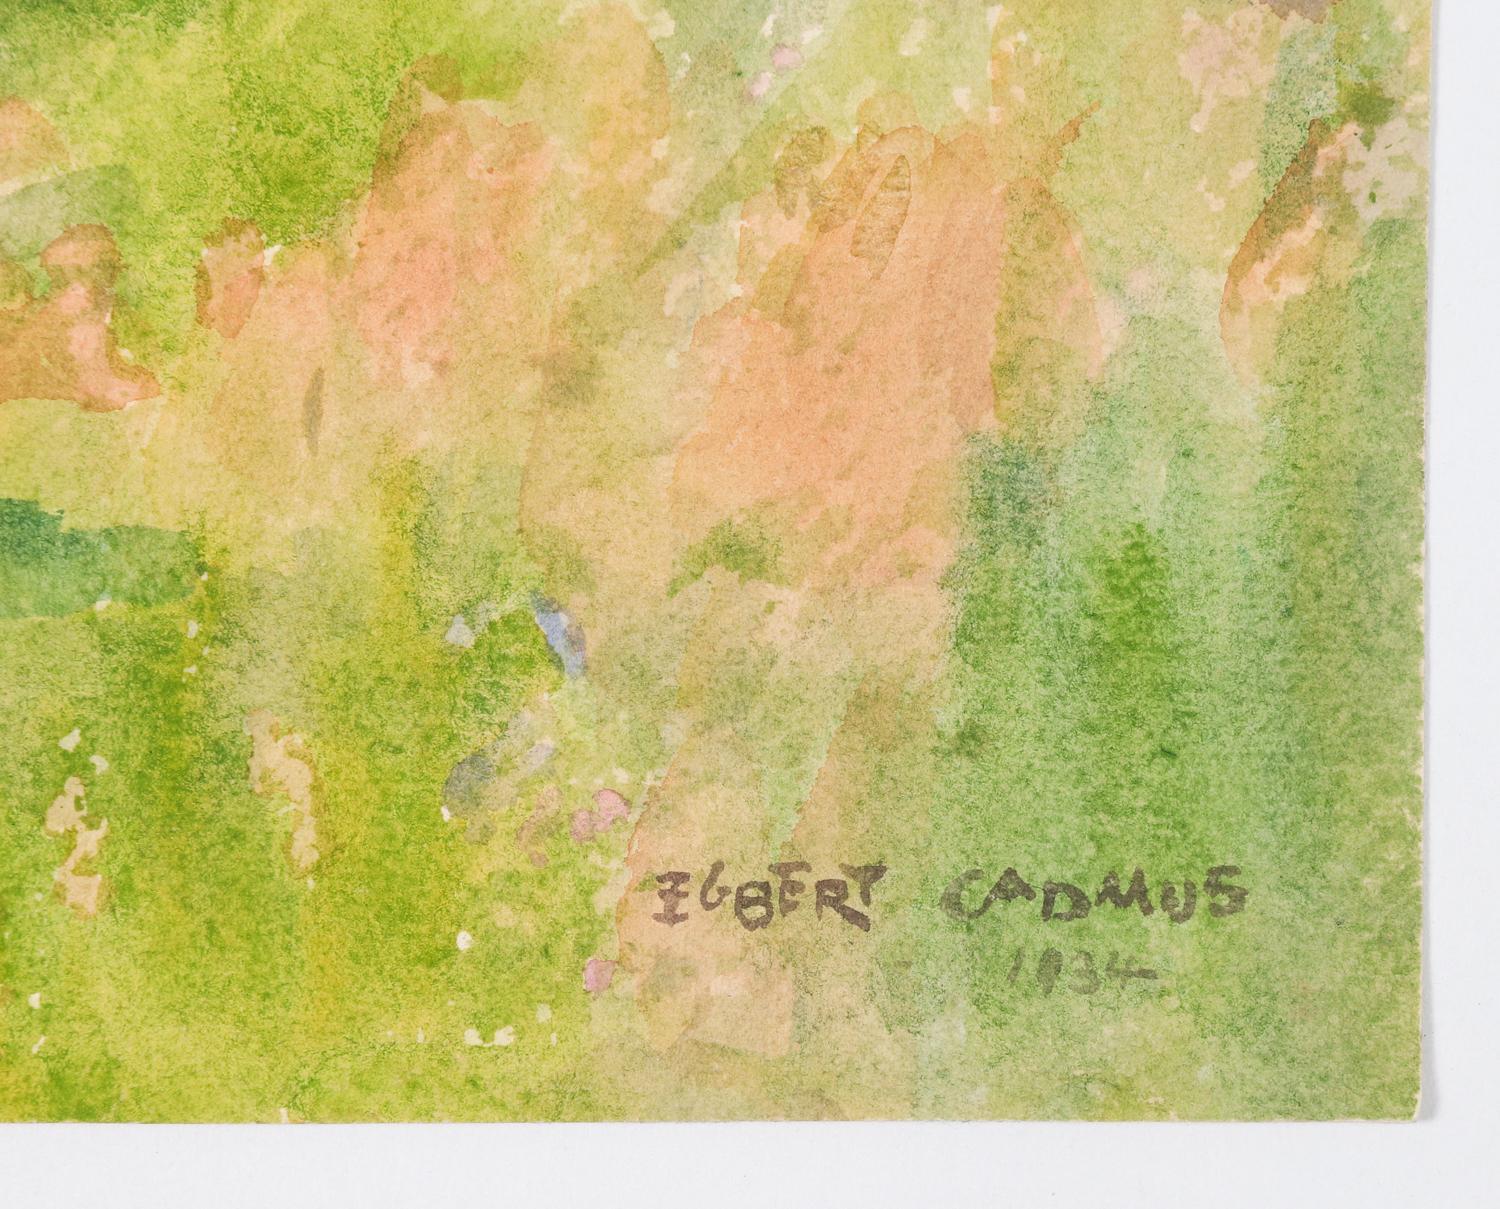 Aquarell auf Papier von Egbert Cadmus (Amerikaner, 1868-1939) einer Landschaft in Neuengland. Ein vollendeter Aquarellmaler, der vor allem als Vater des Künstlers Paul Cadmus bekannt ist. Wurde in den 1930er Jahren Mitglied der Old Lyme Colorny